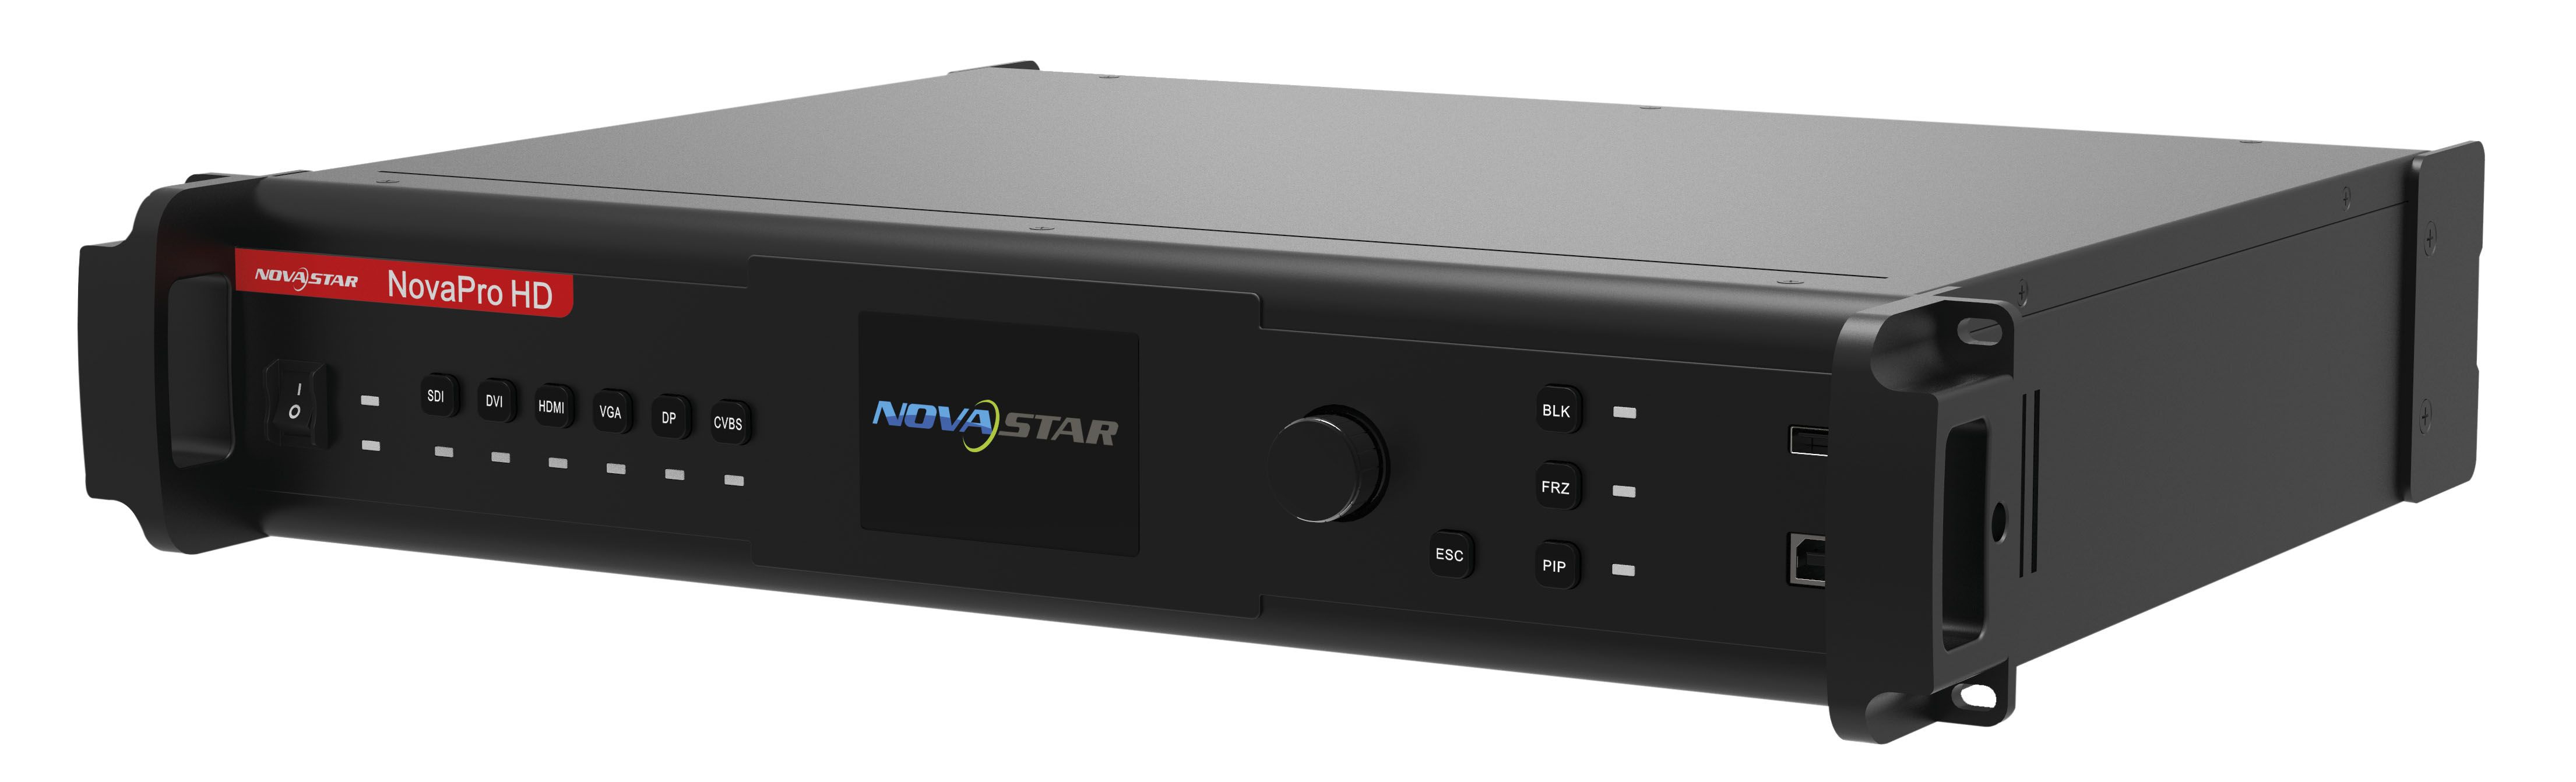 Novastar Pro HD Videoprozessor für LED Bildschirme